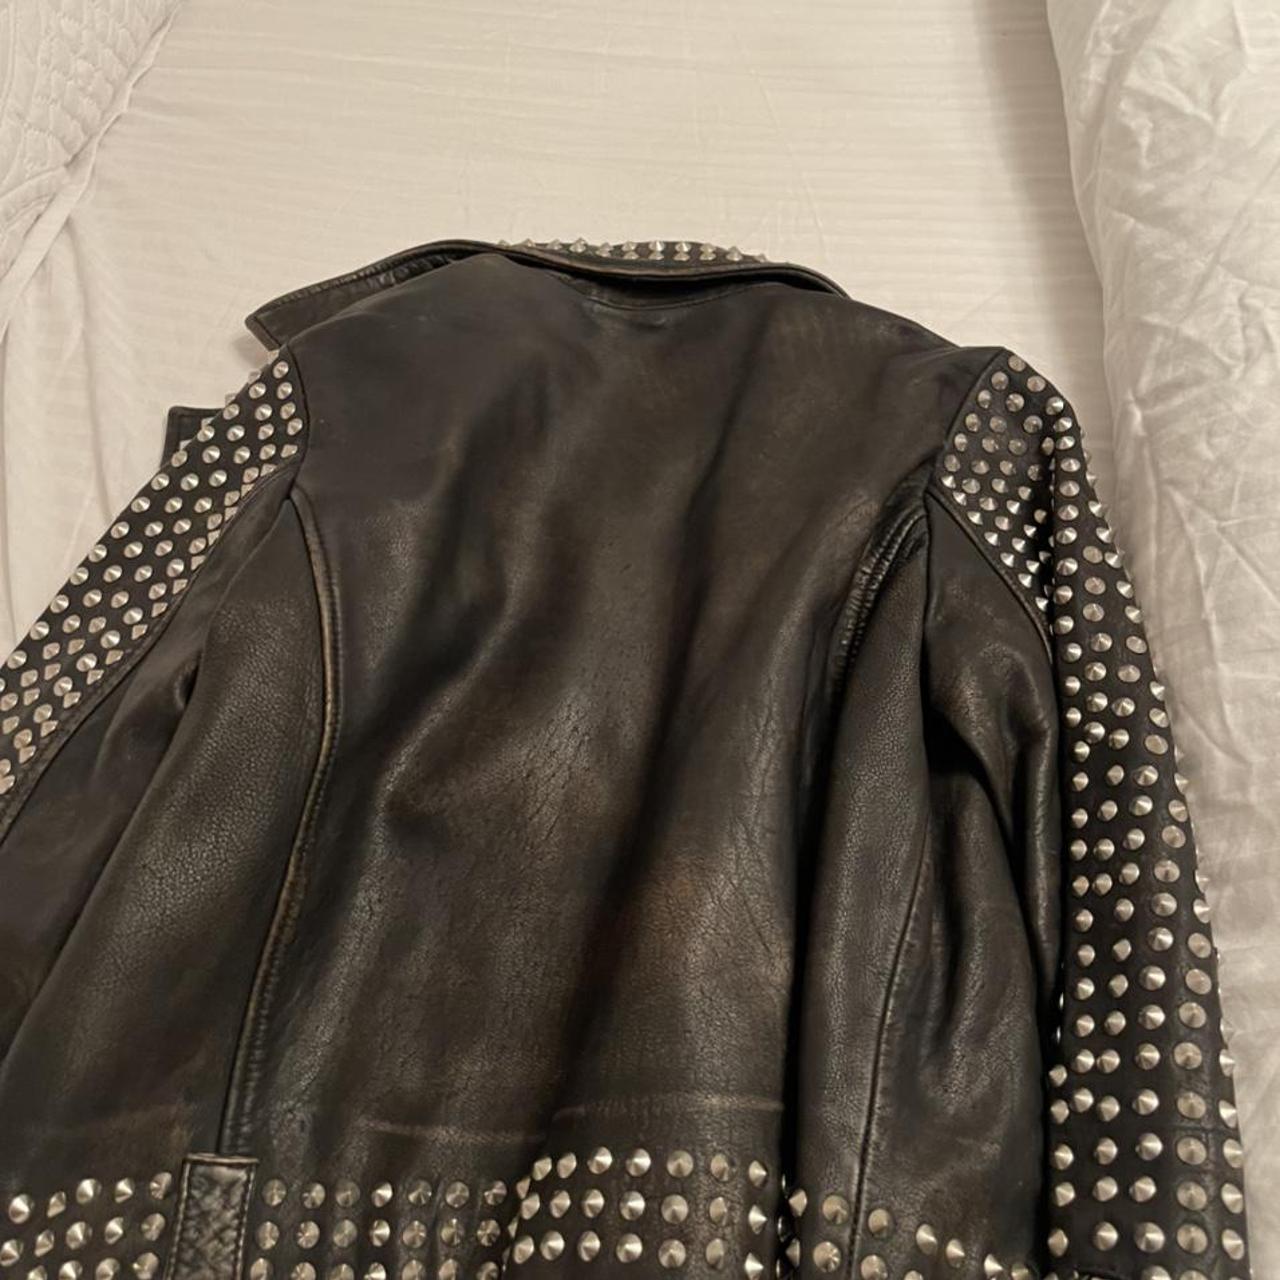 Topshop Stud Leather Jacket - Depop